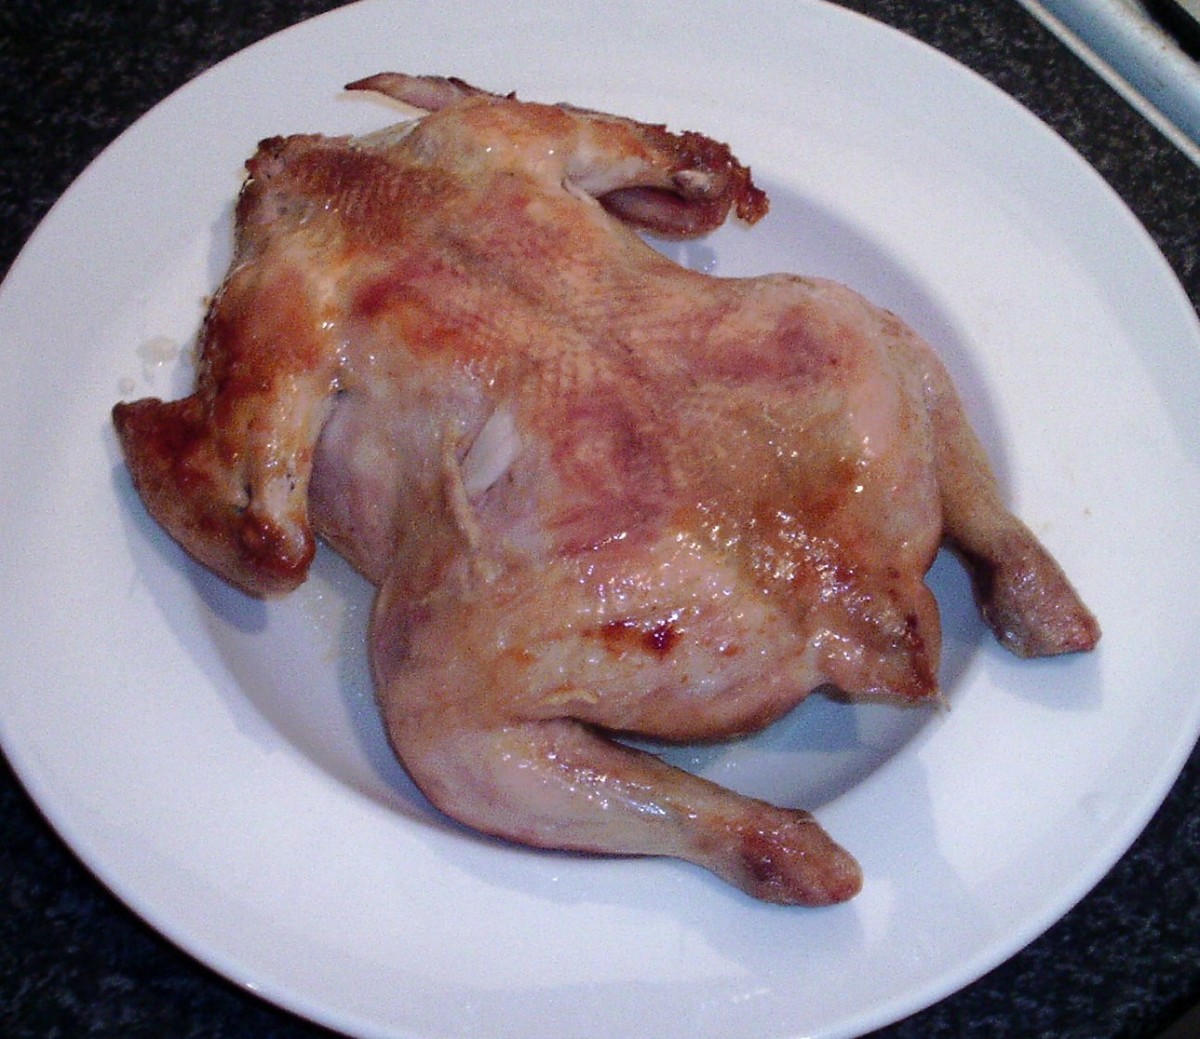 Roast chicken is left to rest